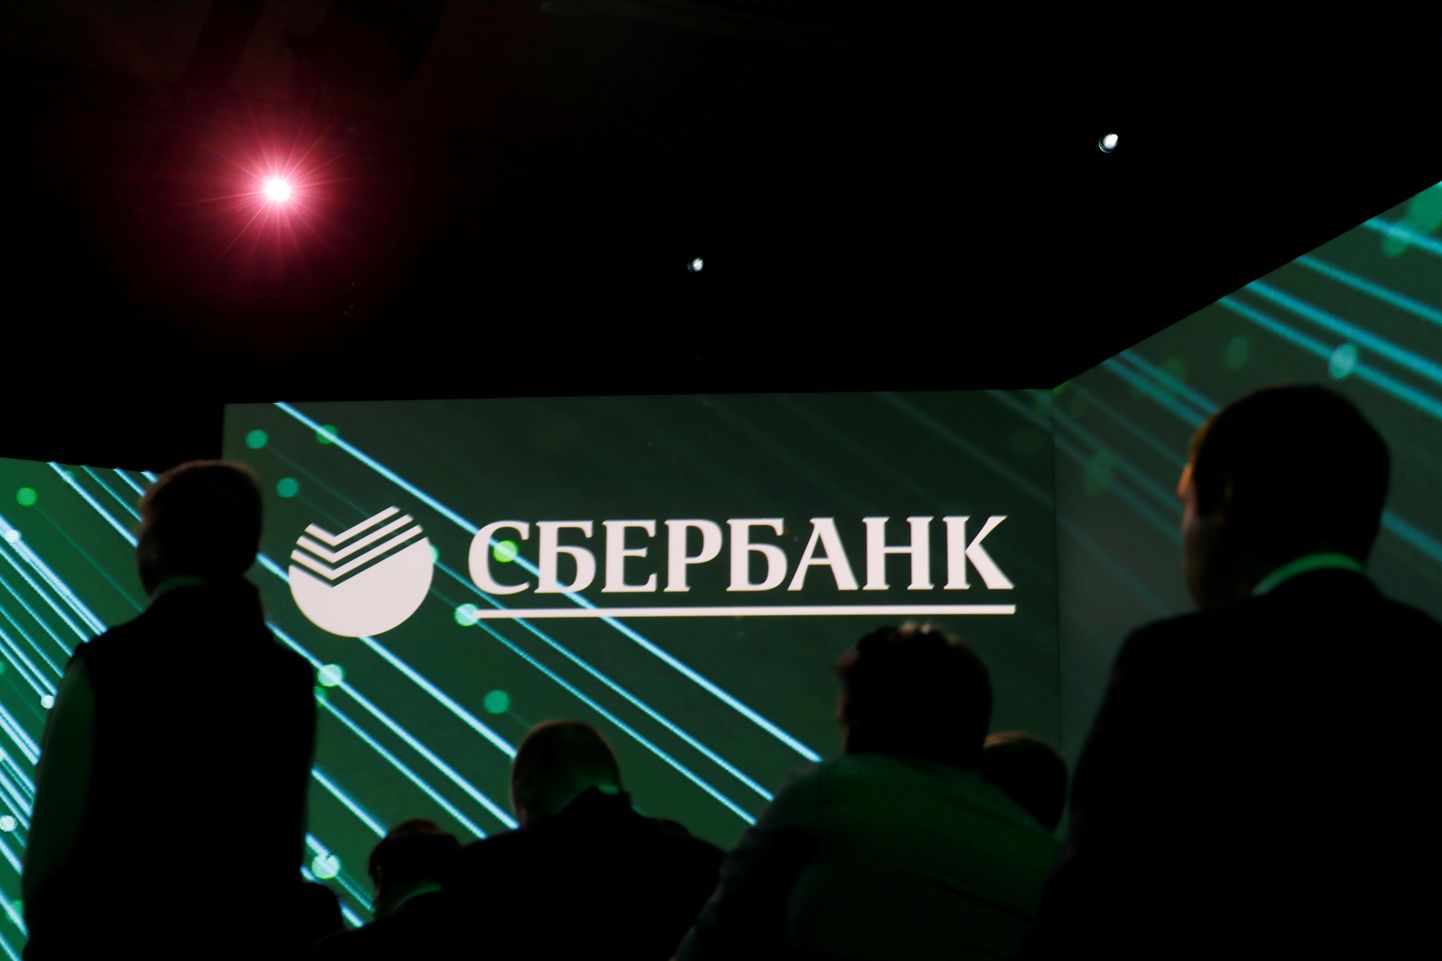 Venemaa Sberbanki logo.